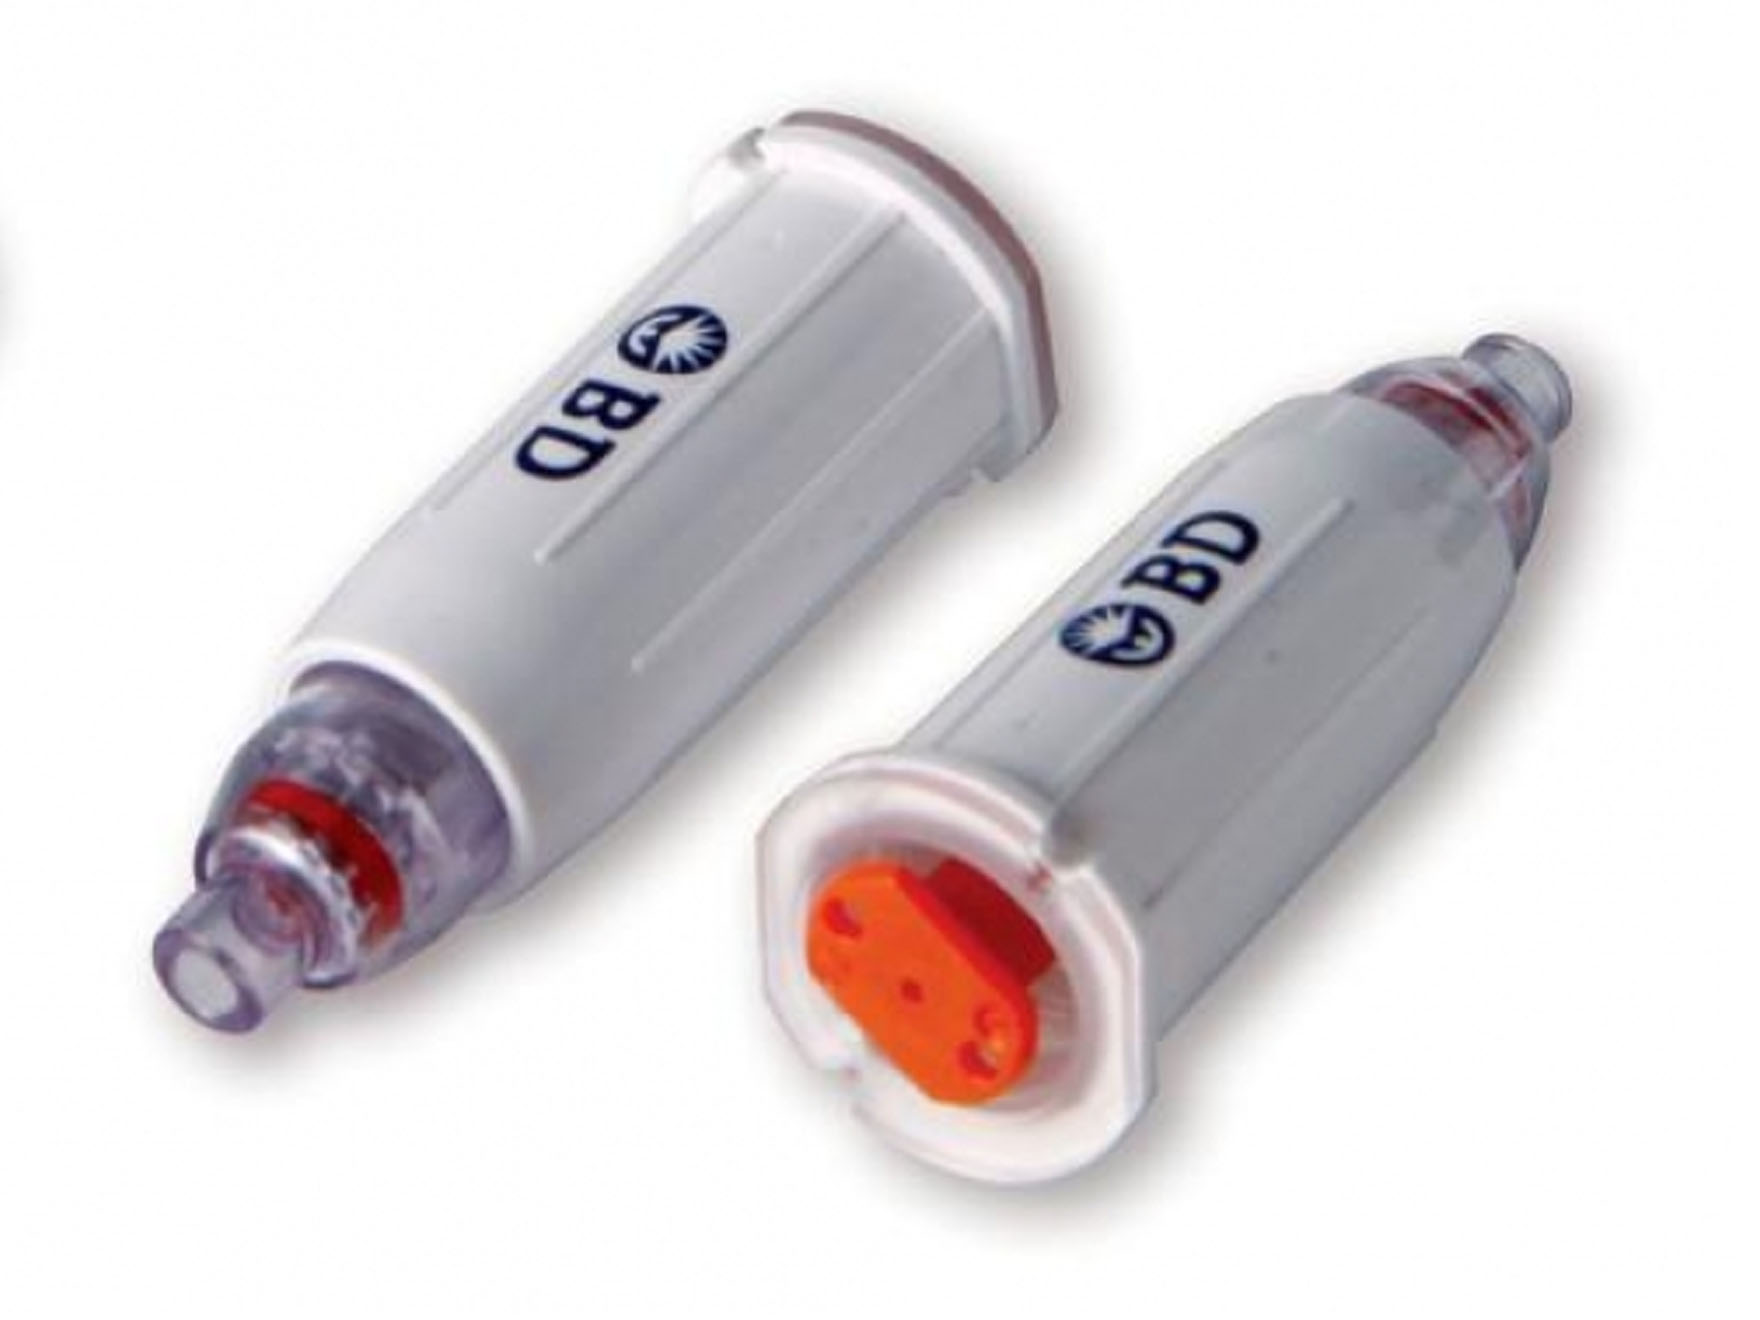 AutoShield Duo - aiguilles sécurisées pour stylo injecteur - stérile - 30G x 5 mm - jaune - 1 x 100 pcs